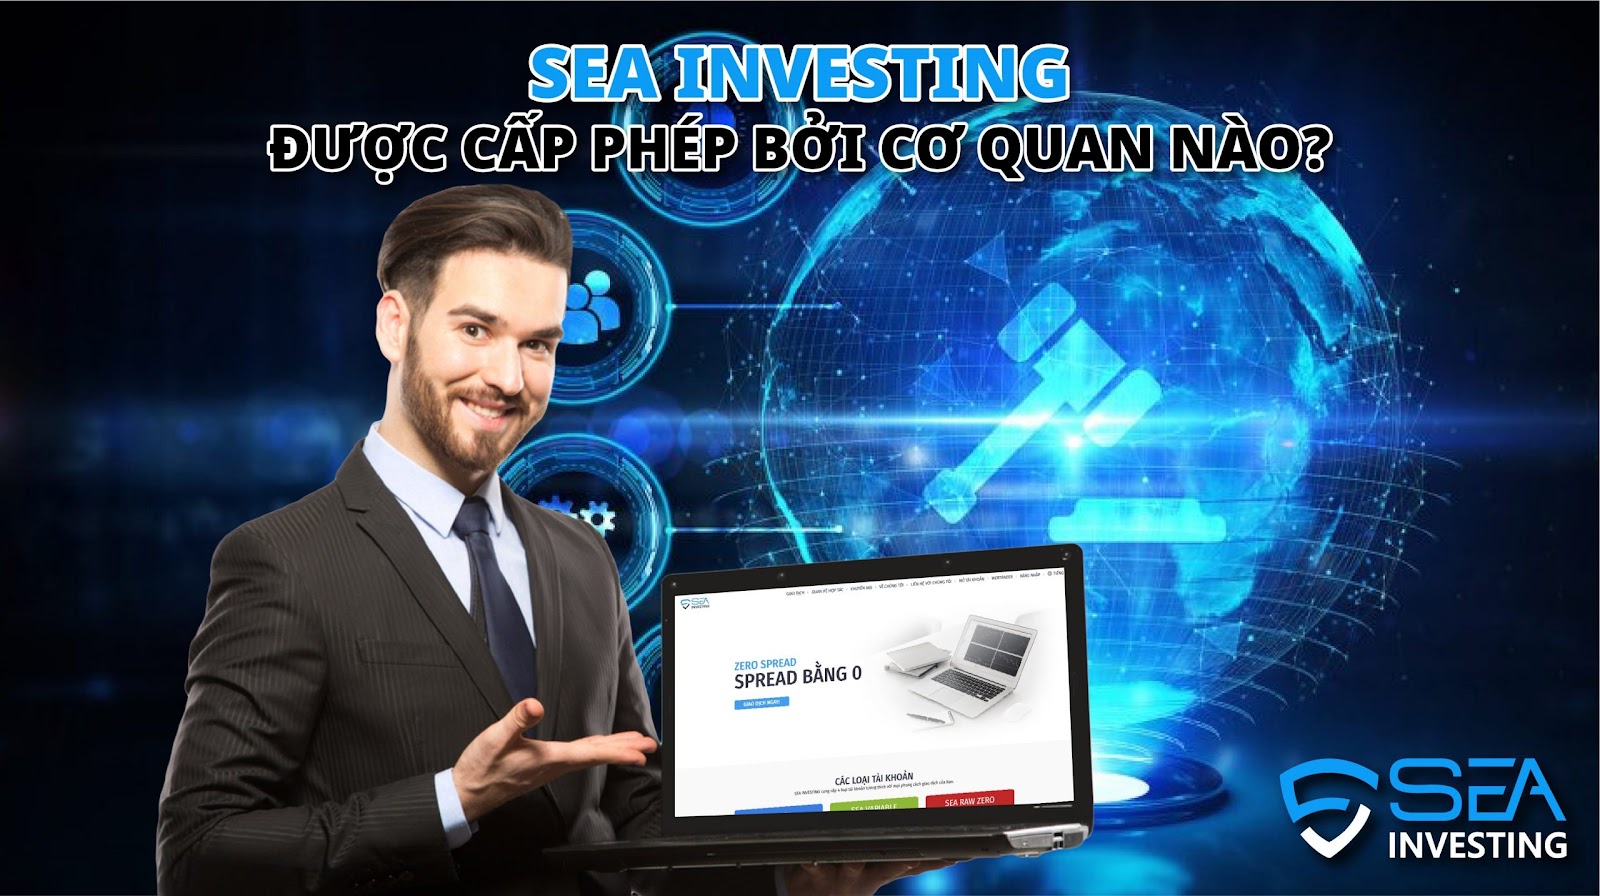 Sea Investing Bằng Chứng Xác Thực Pháp Lý Sàn